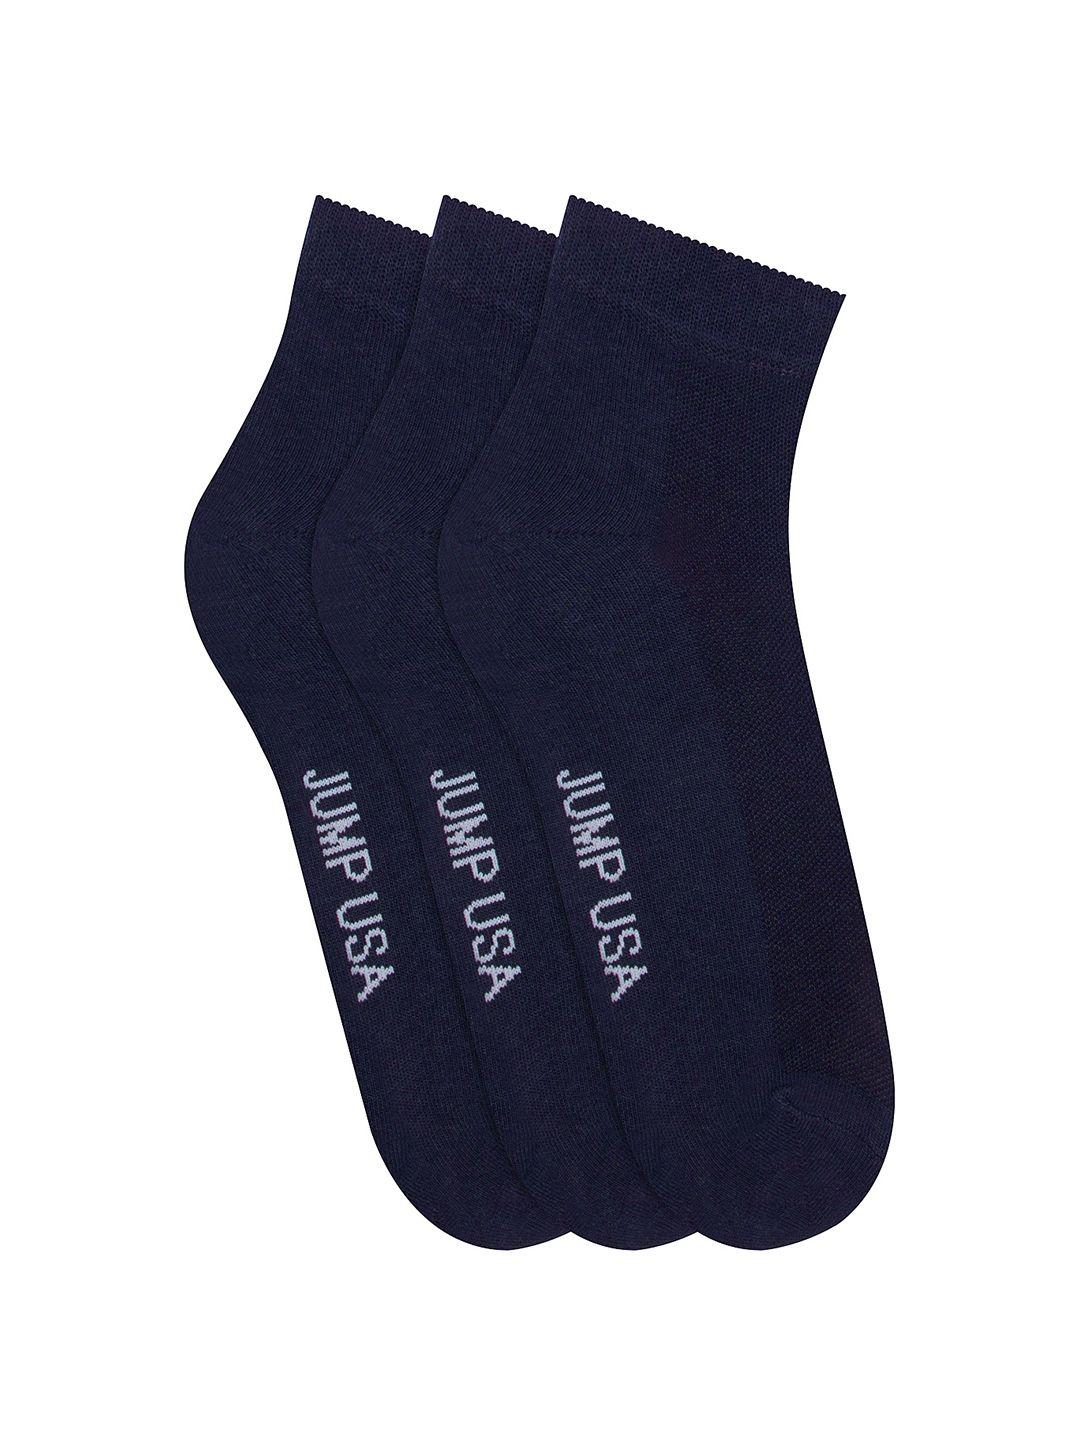 jump-usa-men-navy-blue-pack-of-3-ankle-length-socks